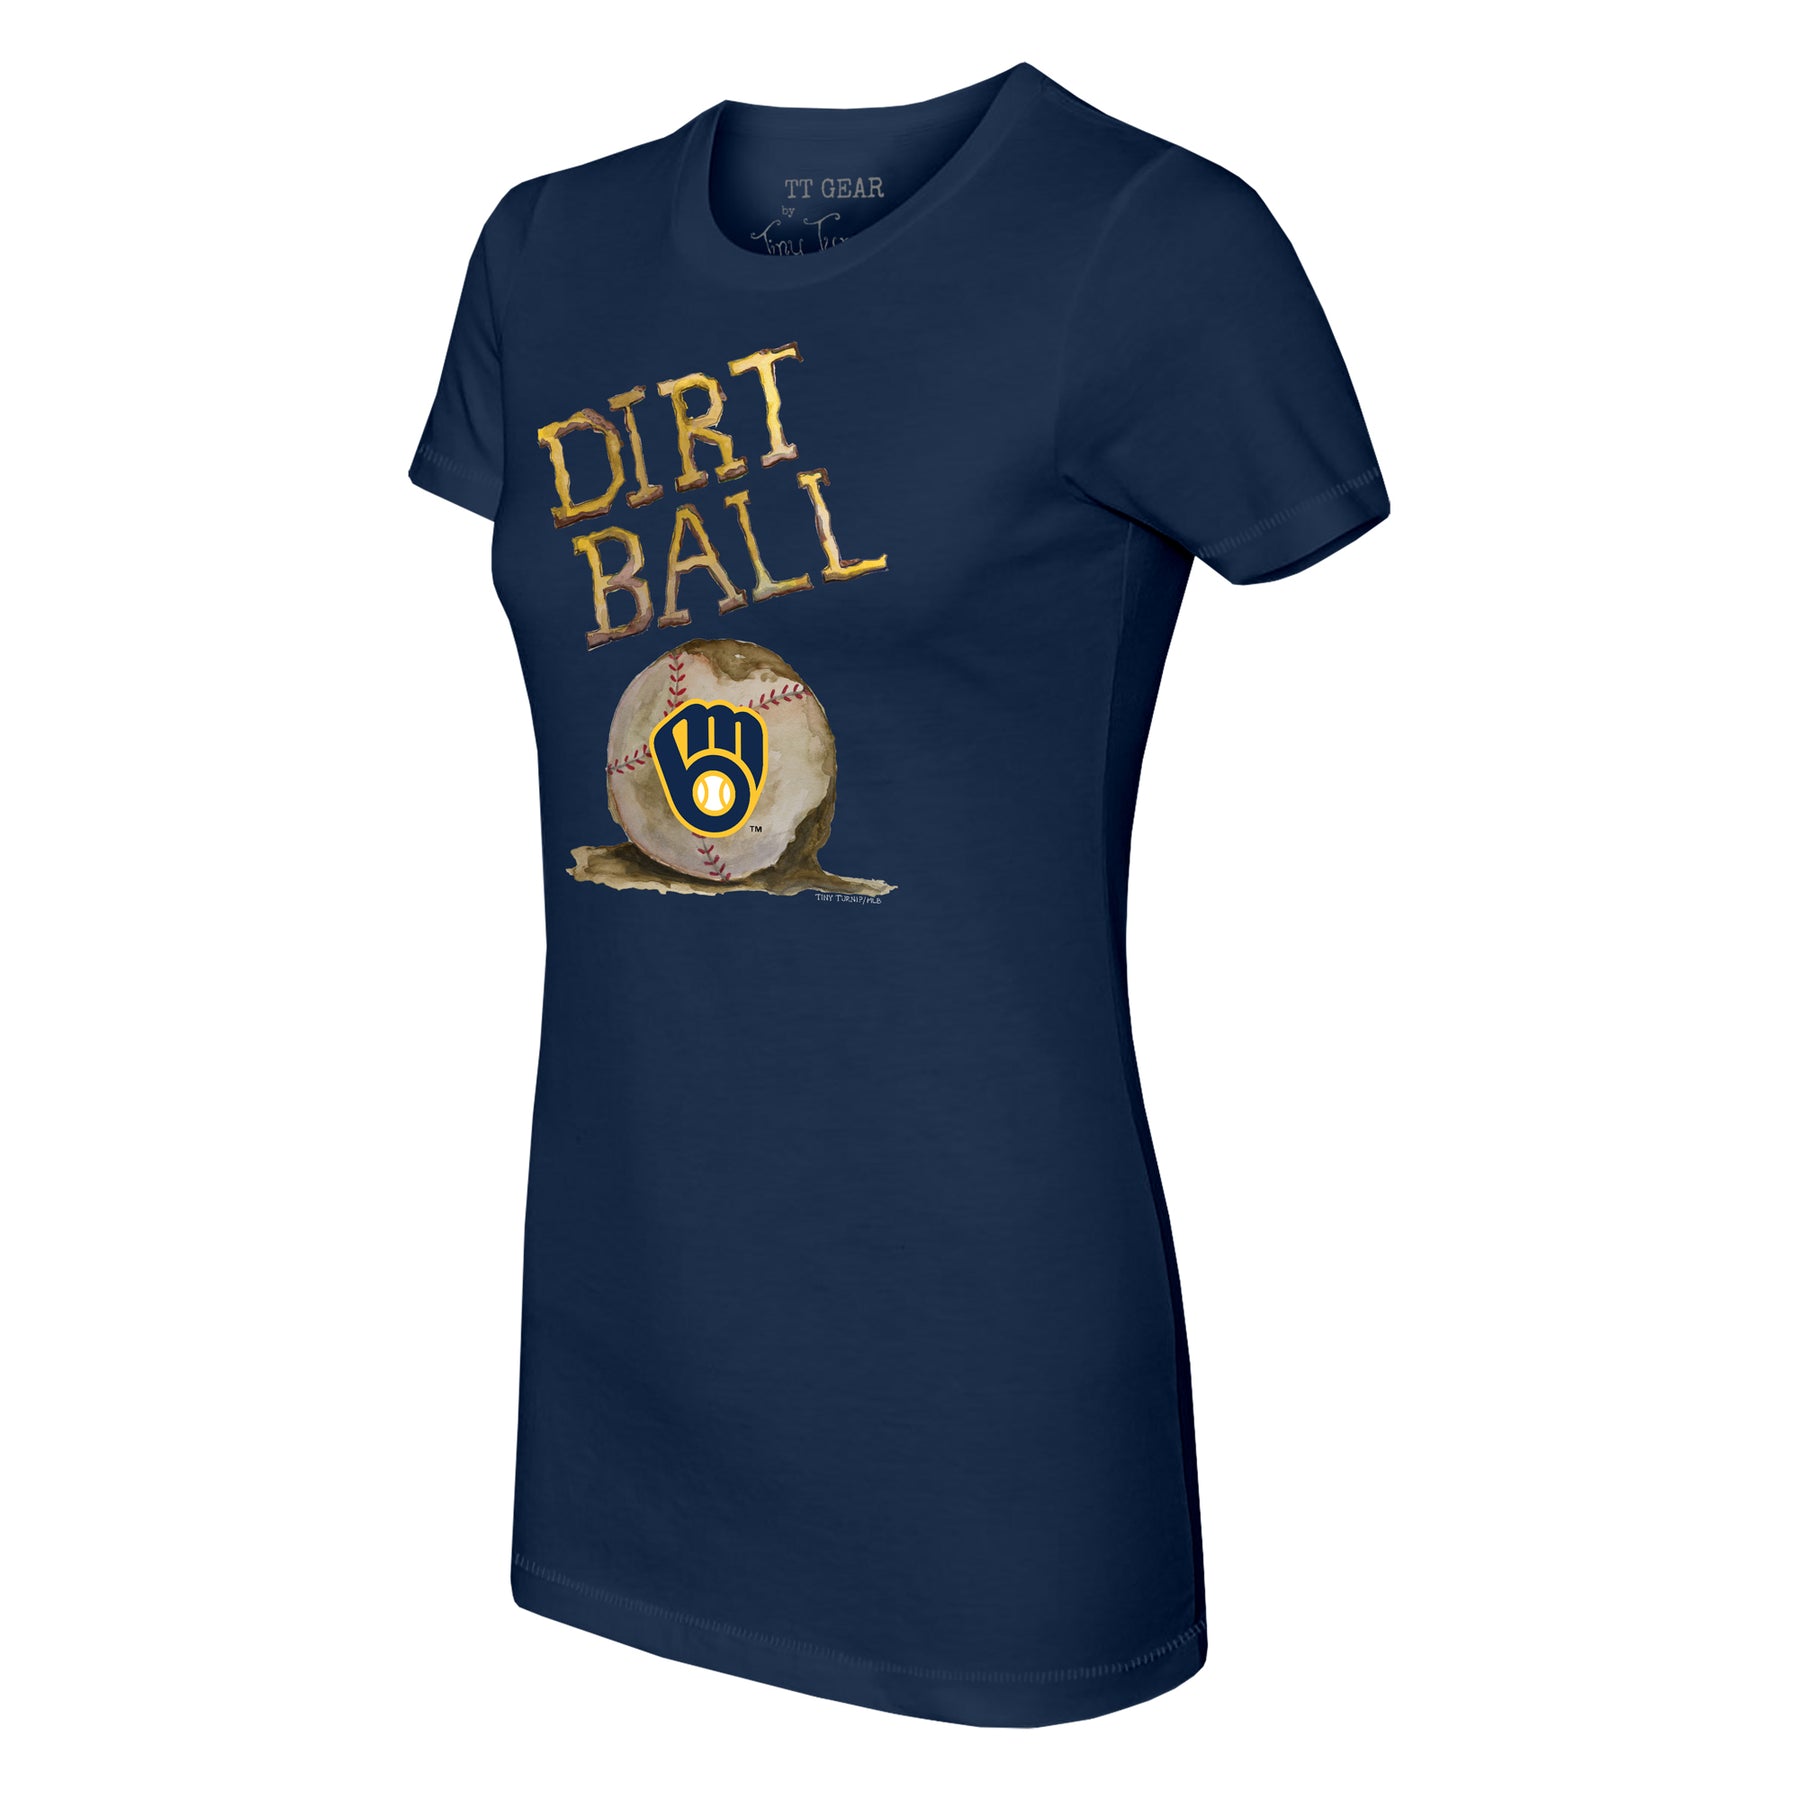 Milwaukee Brewers Dirt Ball Tee Shirt Women's Medium / Navy Blue